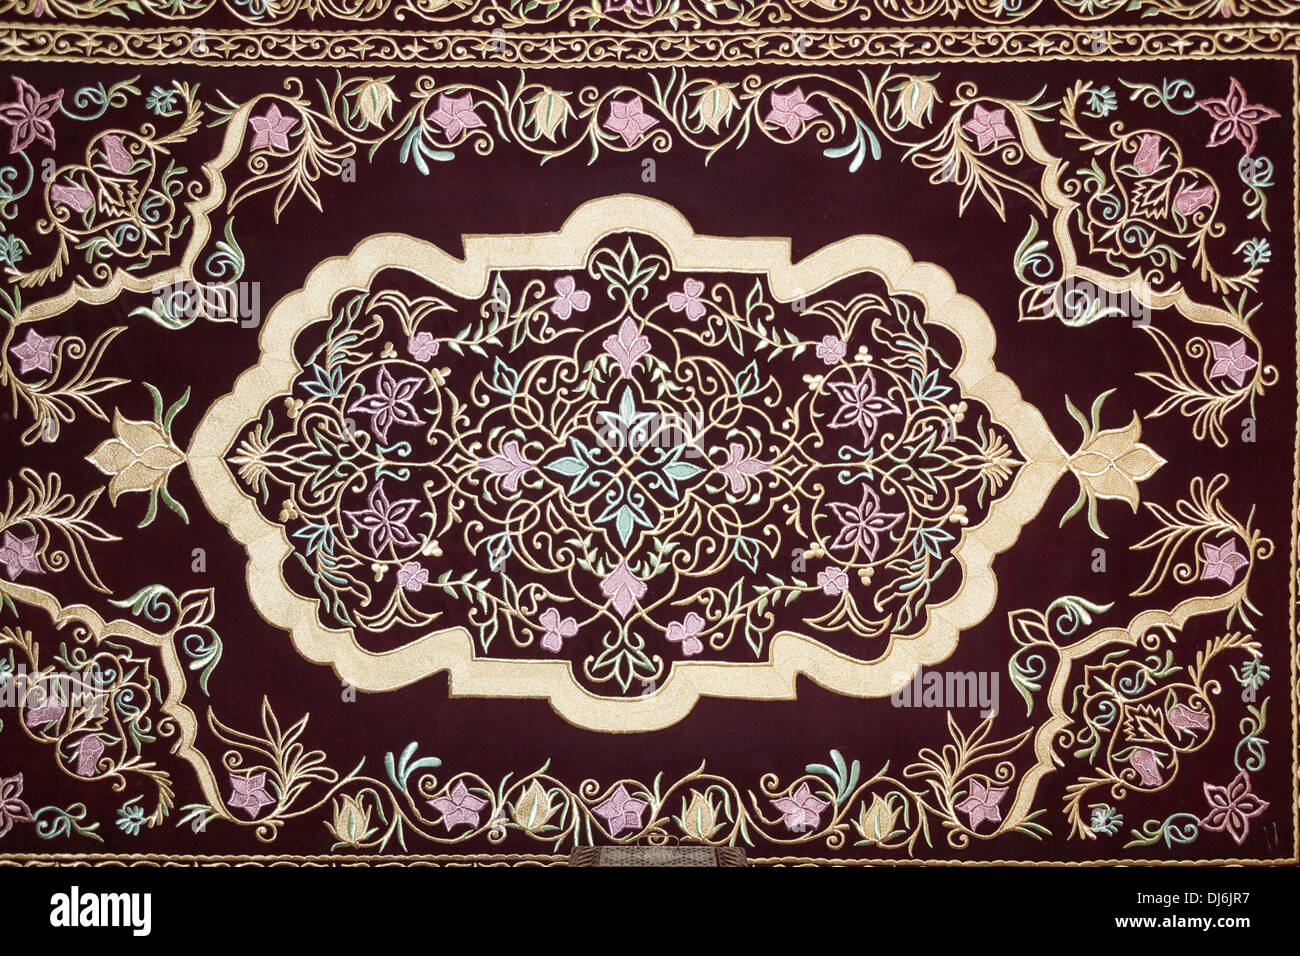 2002 Un Suzani de Boukhara textiles, d'or et d'argent appliqué sur du velours, Musée des Arts Appliqués, Tachkent, Ouzbékistan Banque D'Images